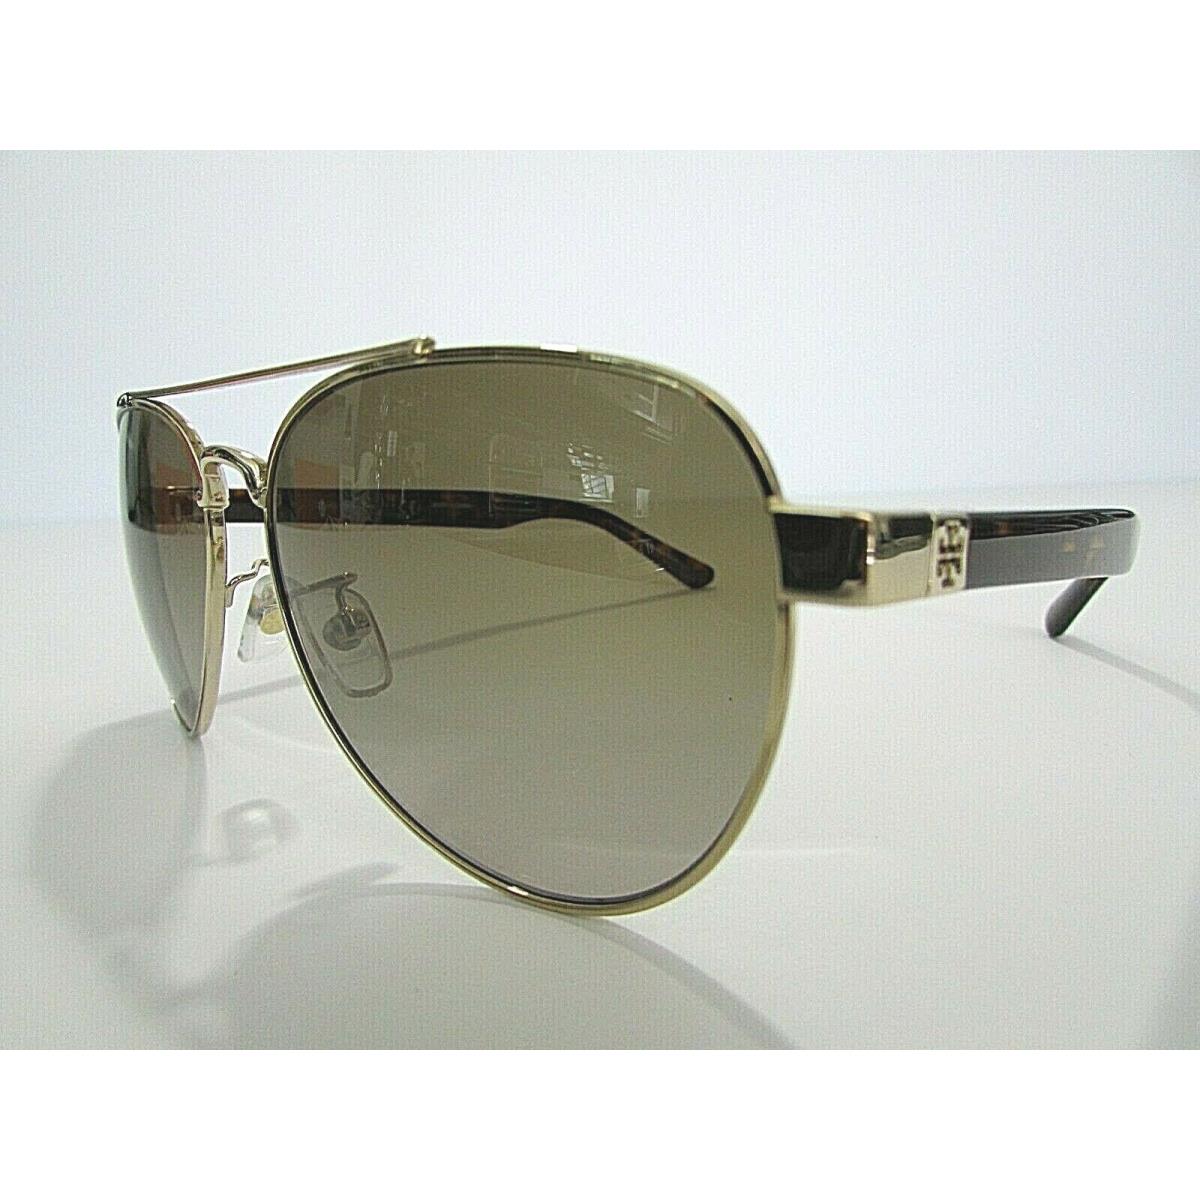 Tory Burch TY6070 TY 6070 327123 Shiny Light Gold Metal UV Sunglasses Frame  - Tory Burch sunglasses - 063425353250 | Fash Brands